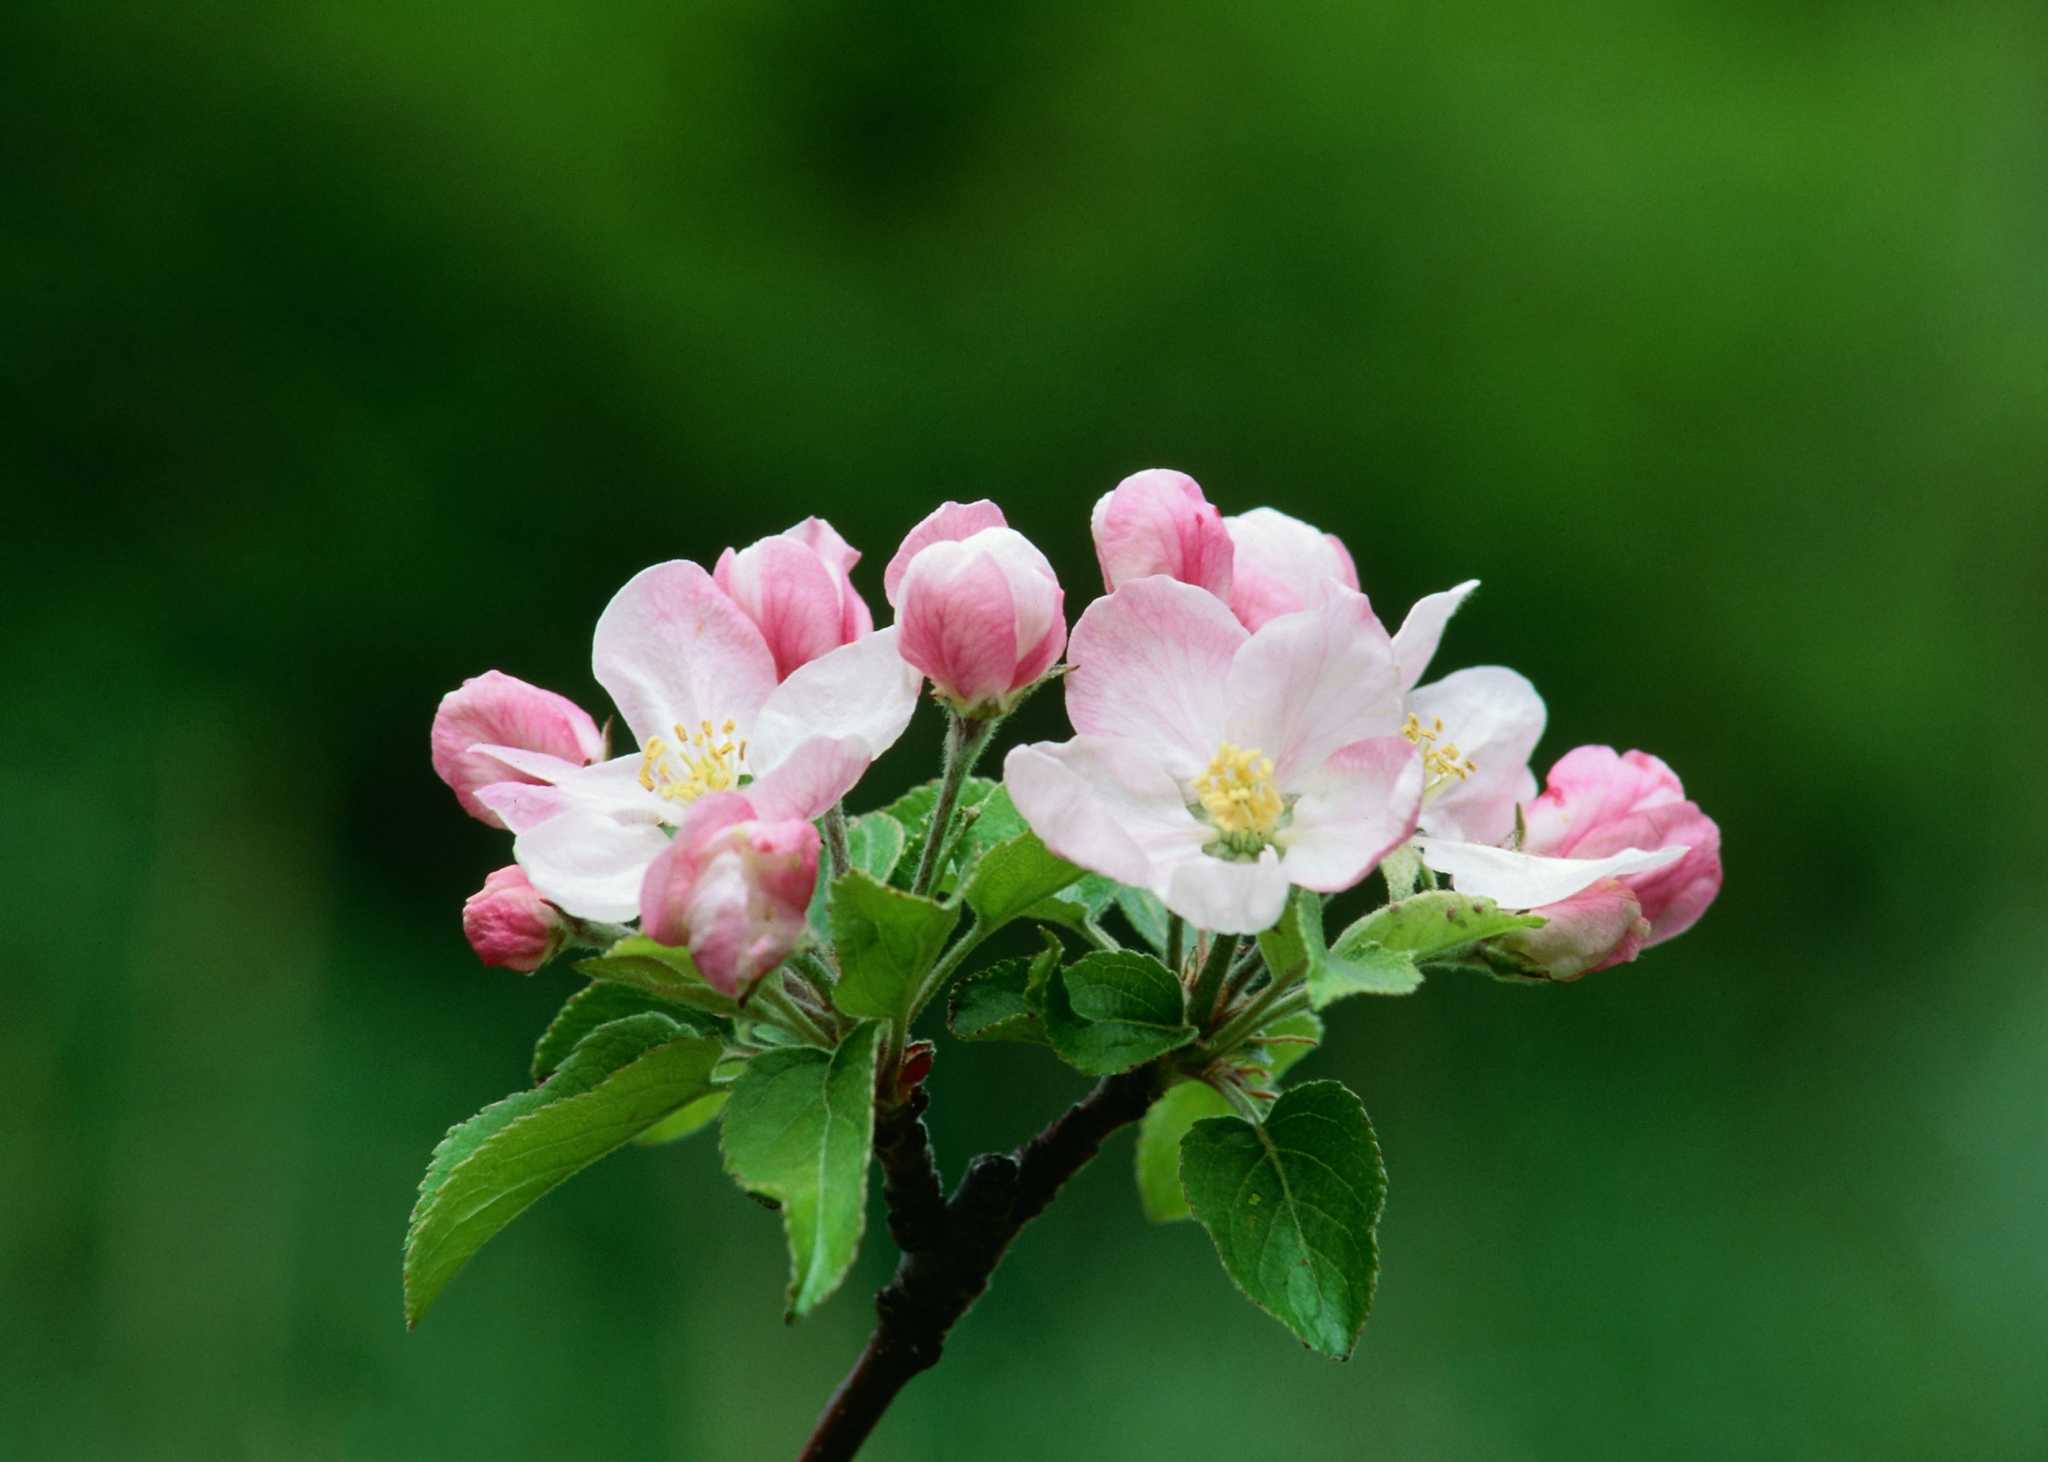 gala apple tree flowers